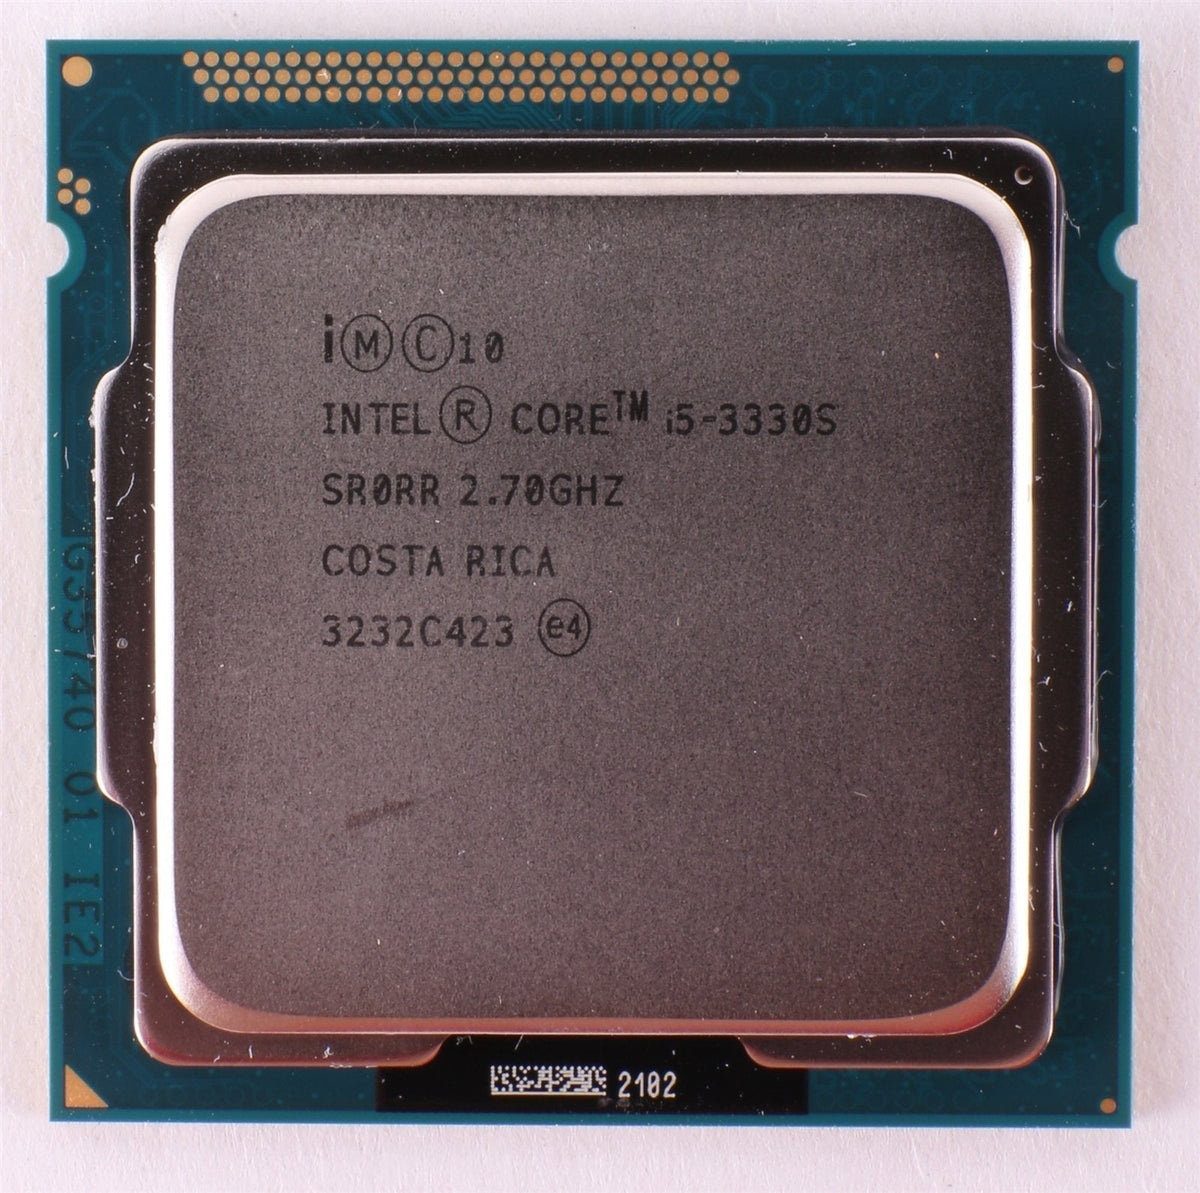 Ivy Bridge Core i5-3330S 2.7GHz Quad Core CPU Processor (SR0RR) LGA 1155 65W